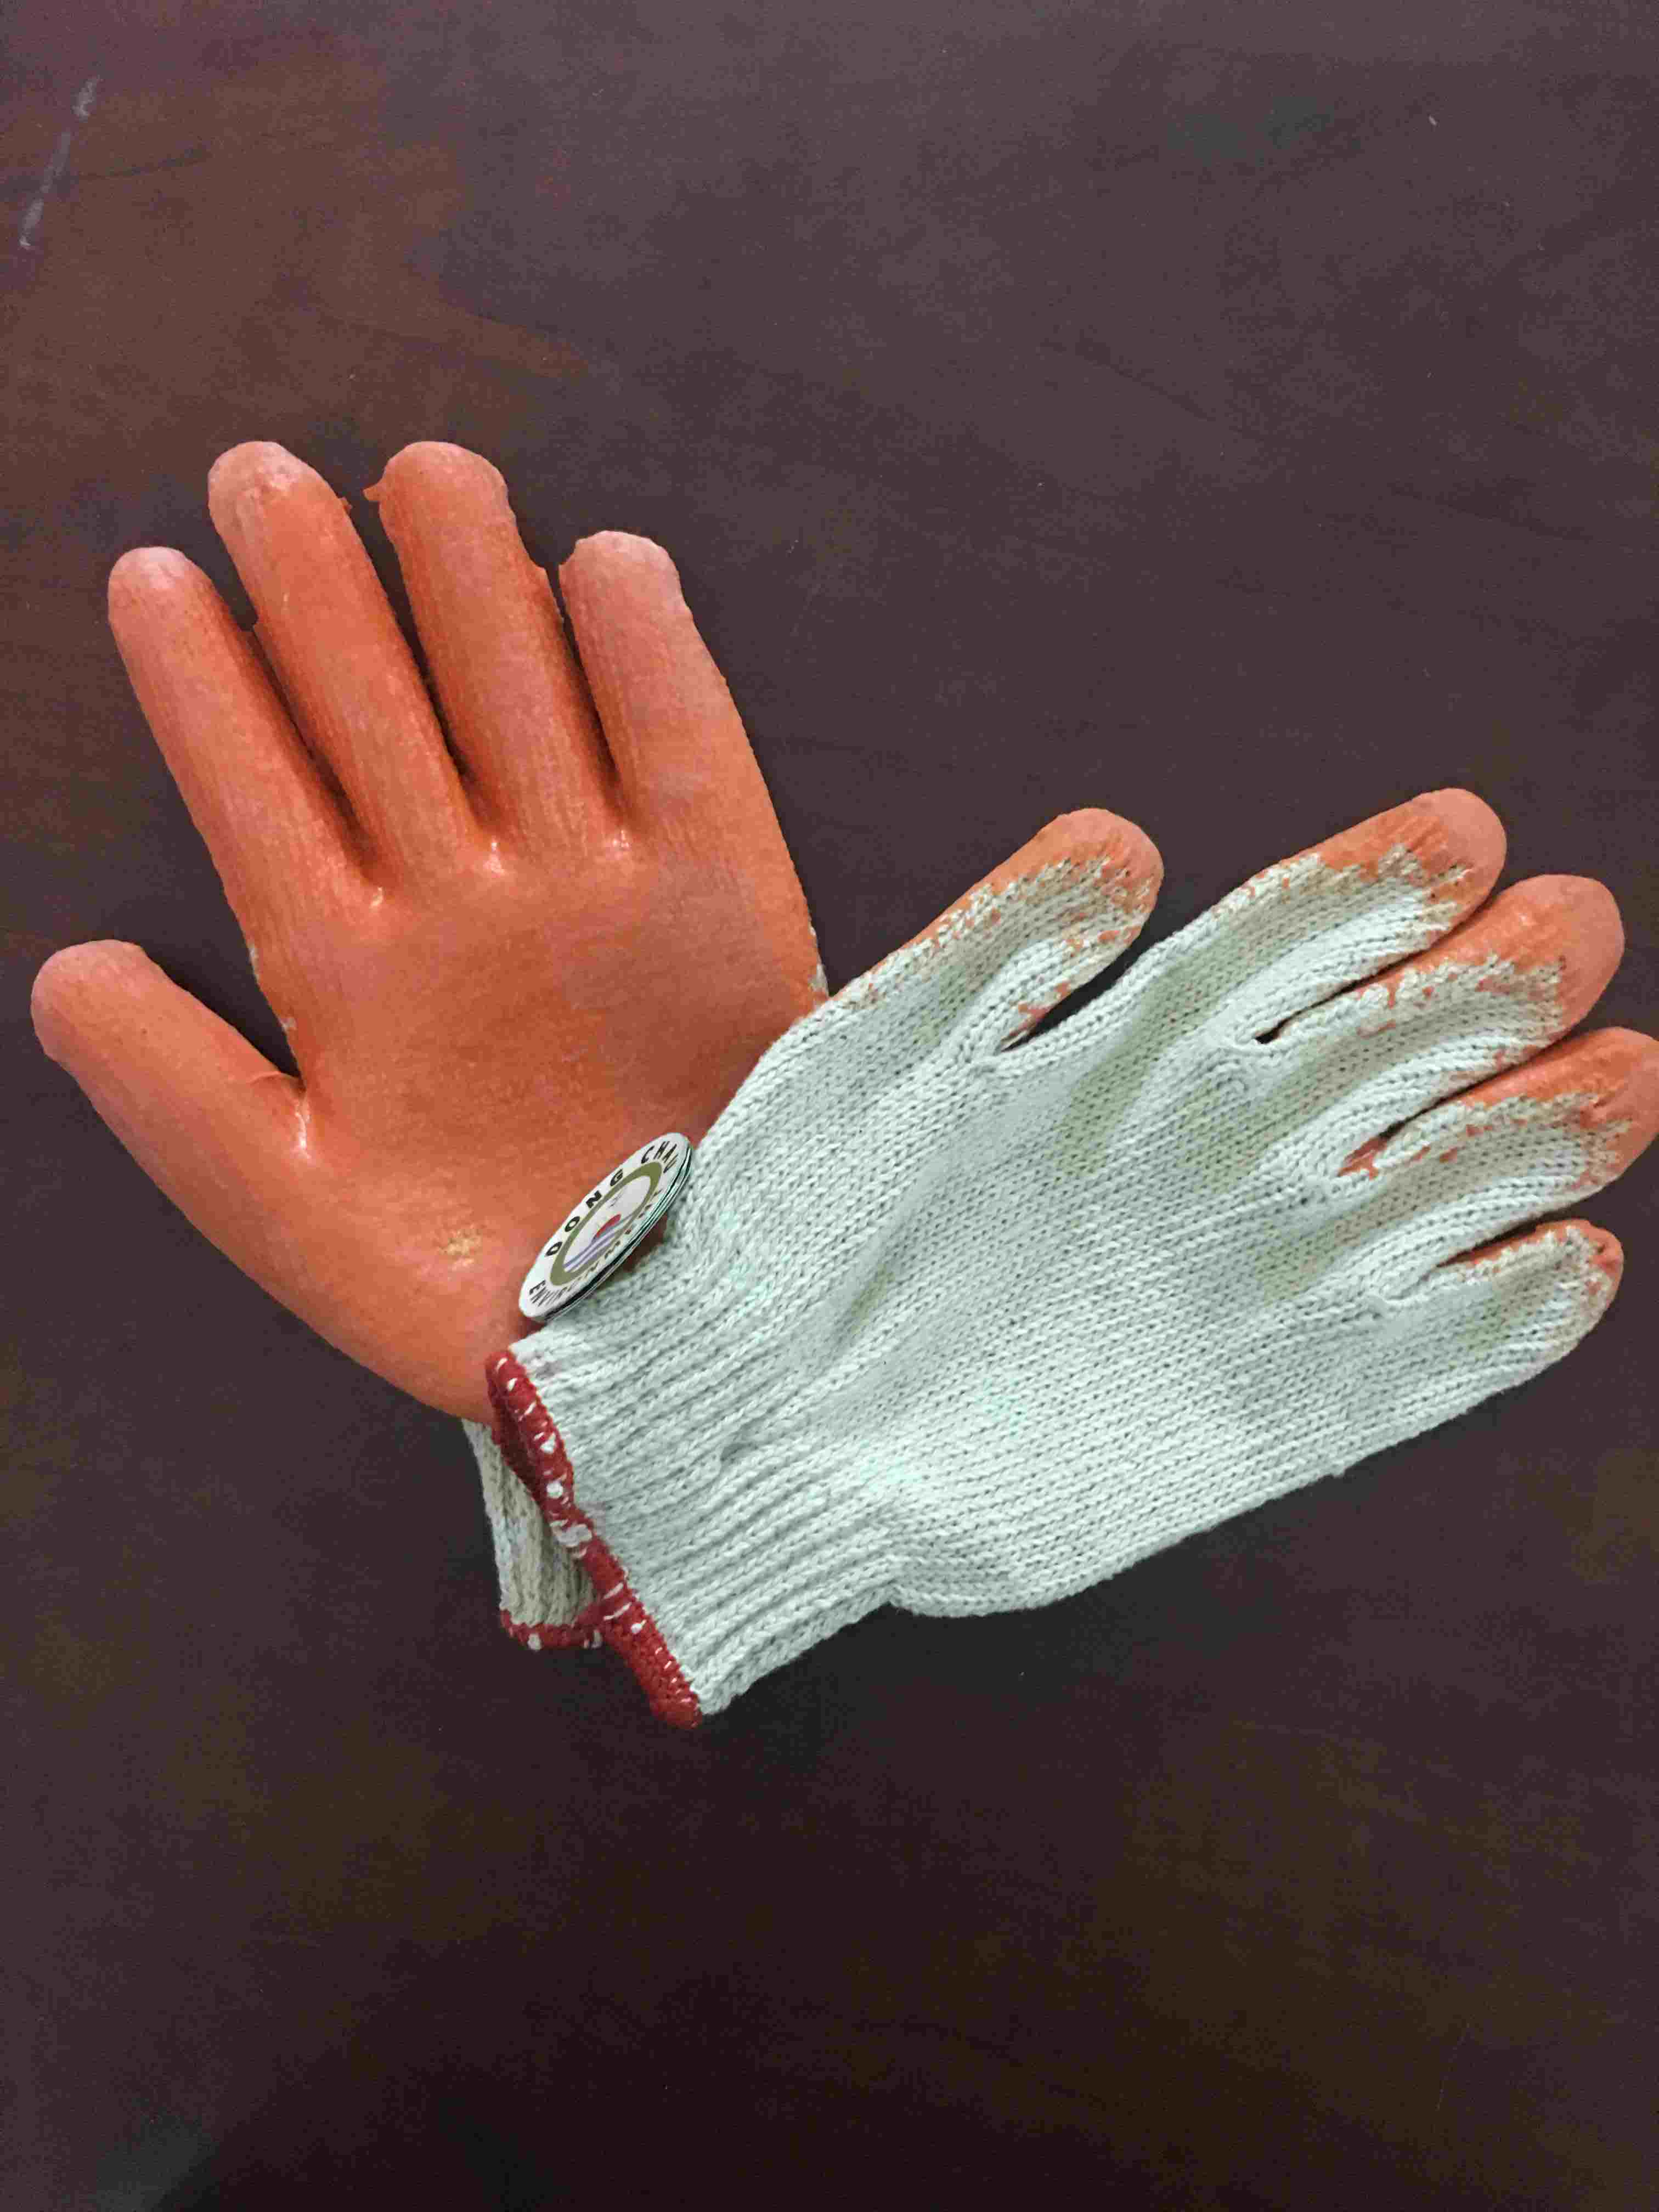 Găng tay phủ sơn màu cam